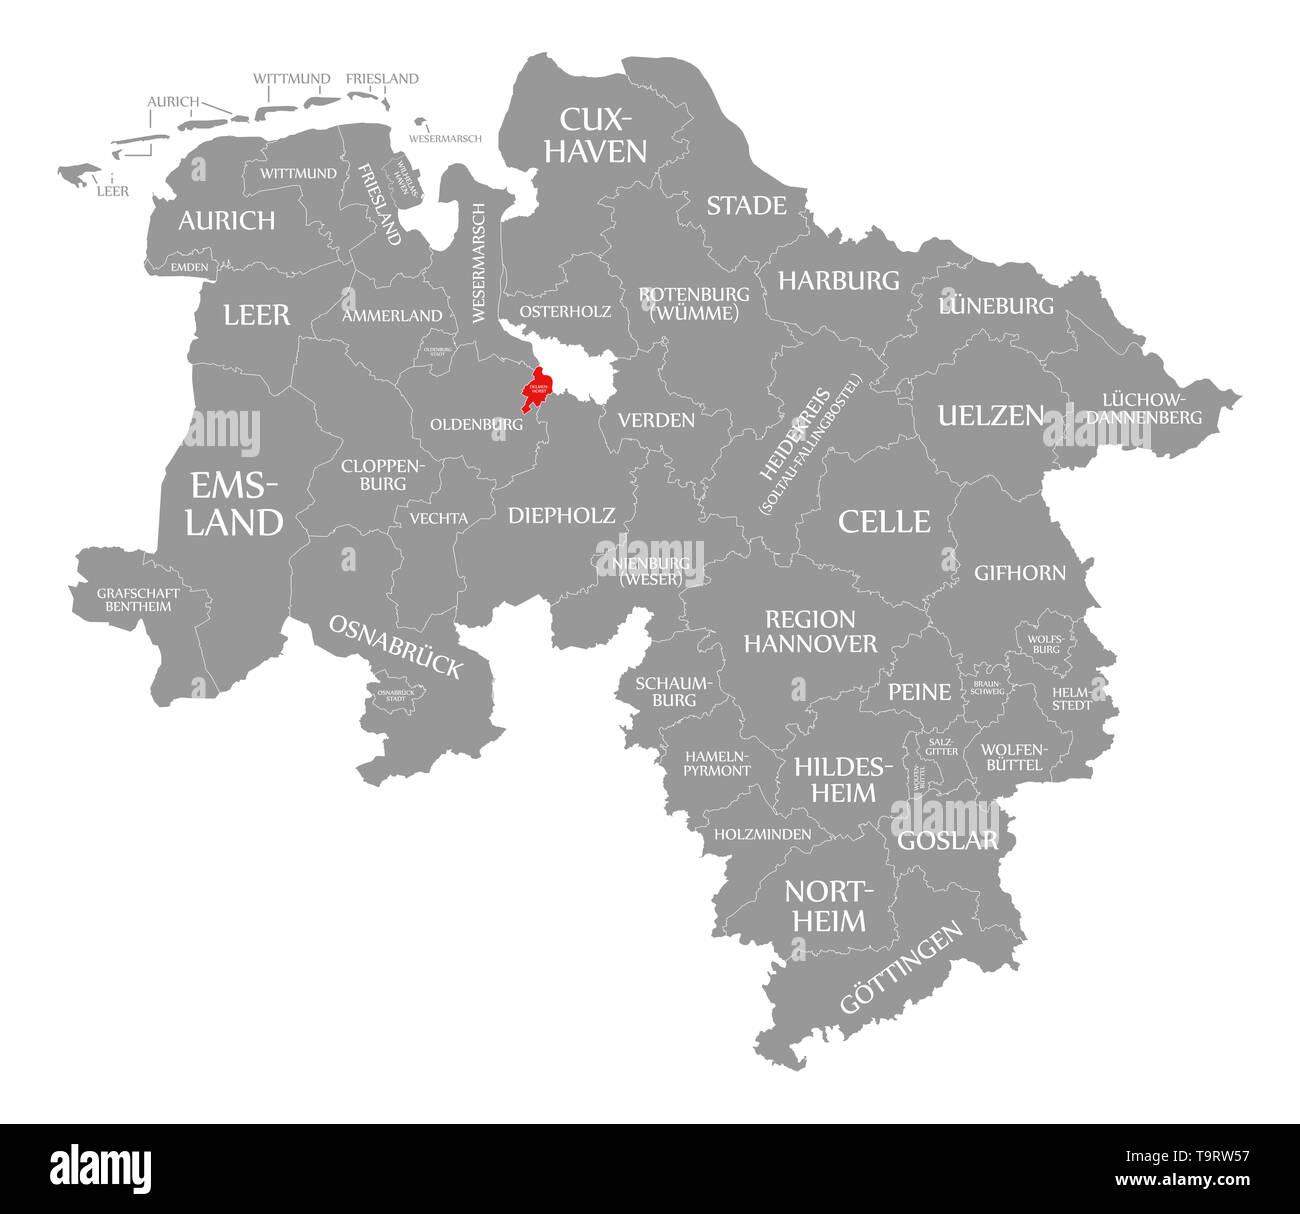 Delmenhorst rouge en évidence dans la carte du comté de Basse-Saxe, Allemagne Banque D'Images